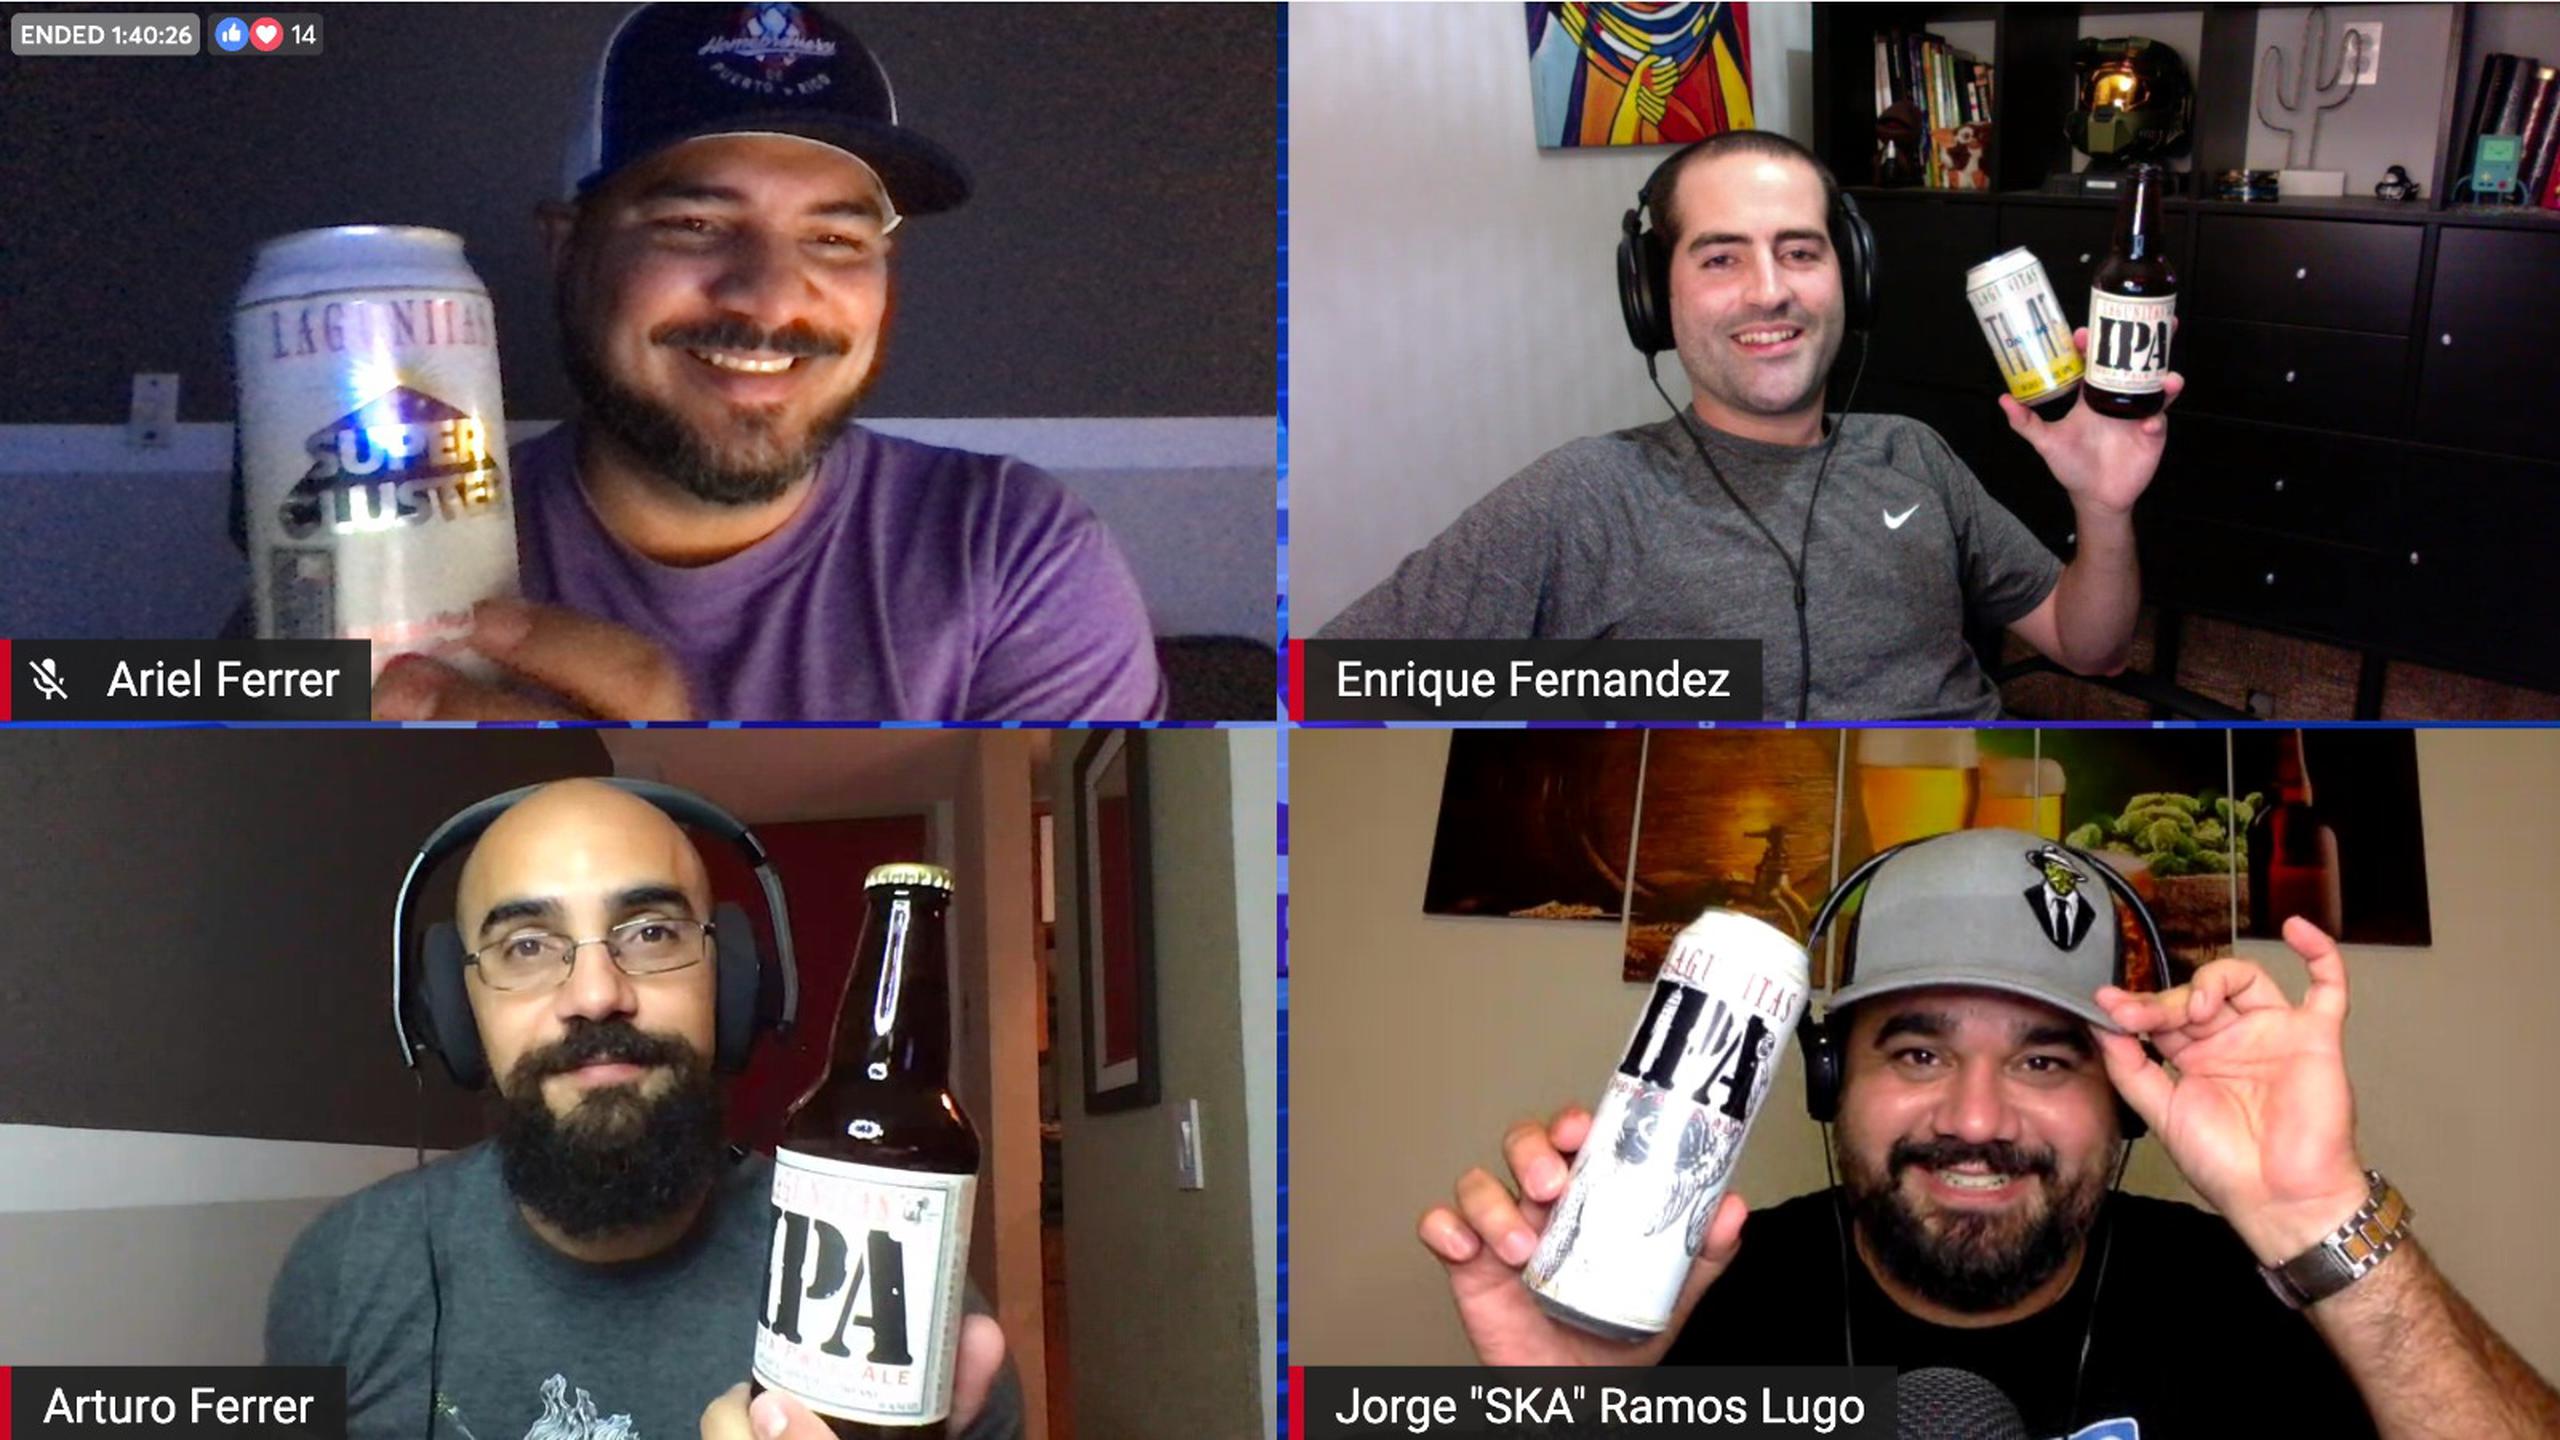 Ariel Ferrer, Enrique Fernández, Arturo Ferrer y Jorge I. Ramos Lugo son los creadores del "podcast".